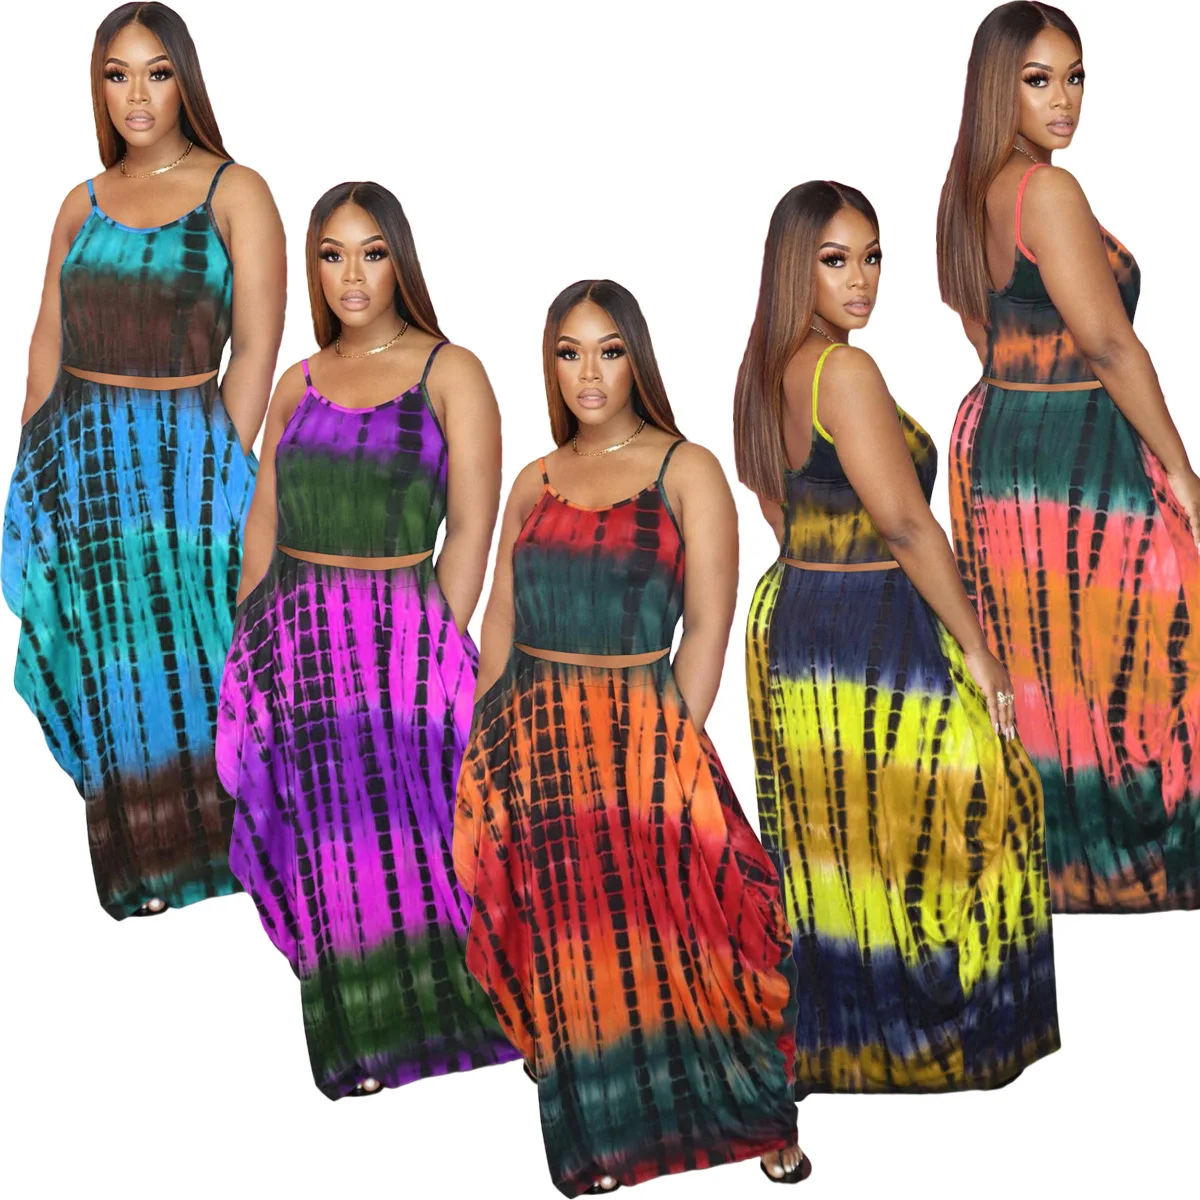 

Casaul Women Skirt Set Print Tie Dye Spaghetti Strap + Long Skirt Dress Summer Beach Clothes For Women Outfit